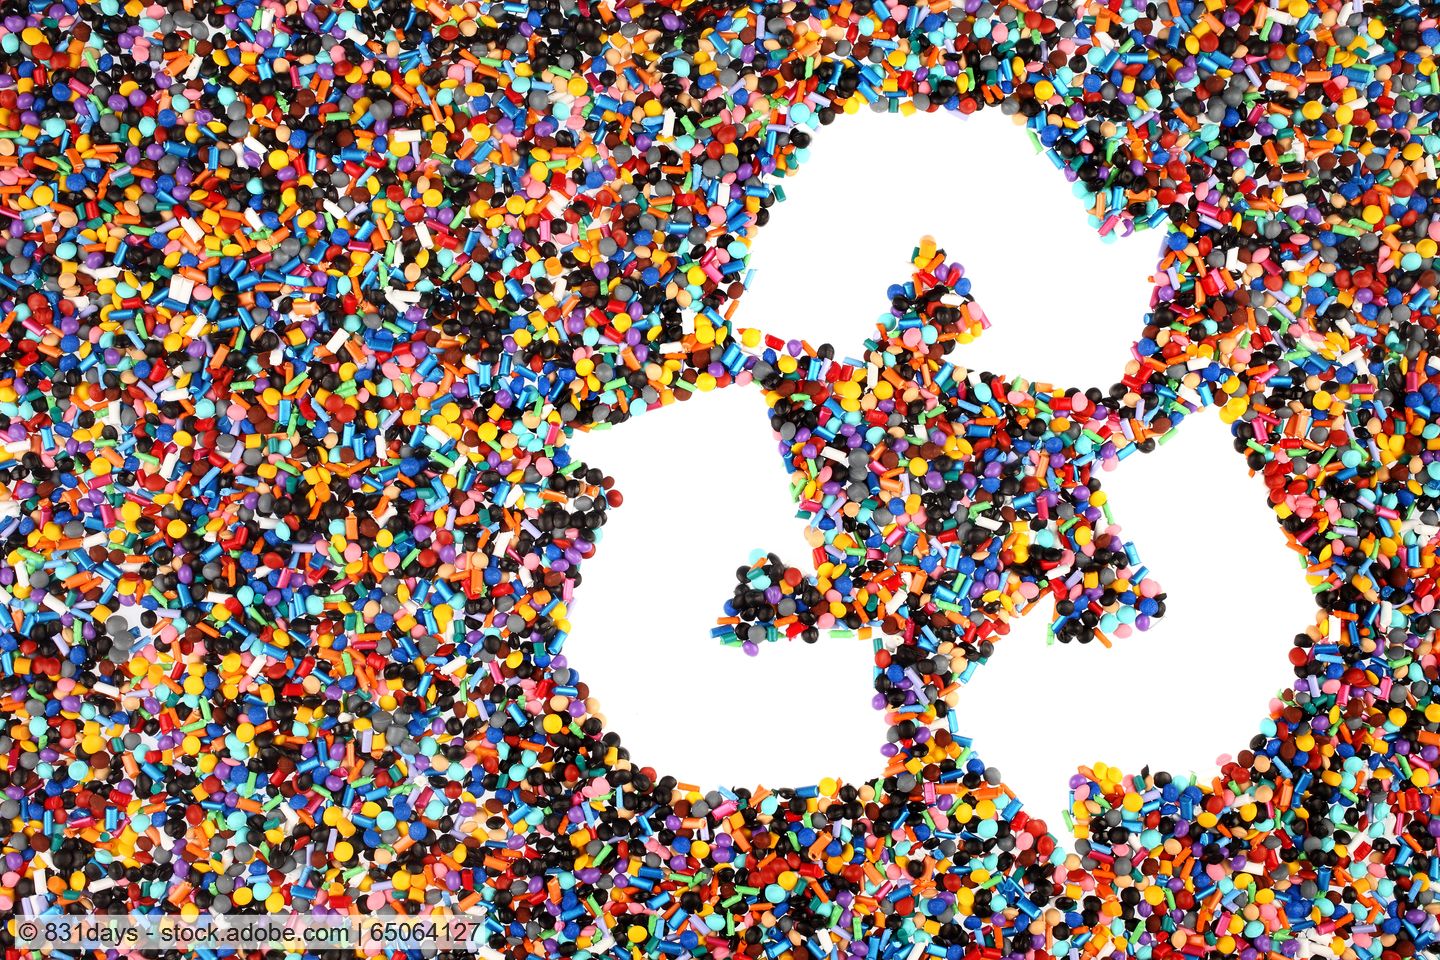 Recyclingsymbol mit drei Pfeilen vor Hintergrund aus bunten Kunststoffpellets.